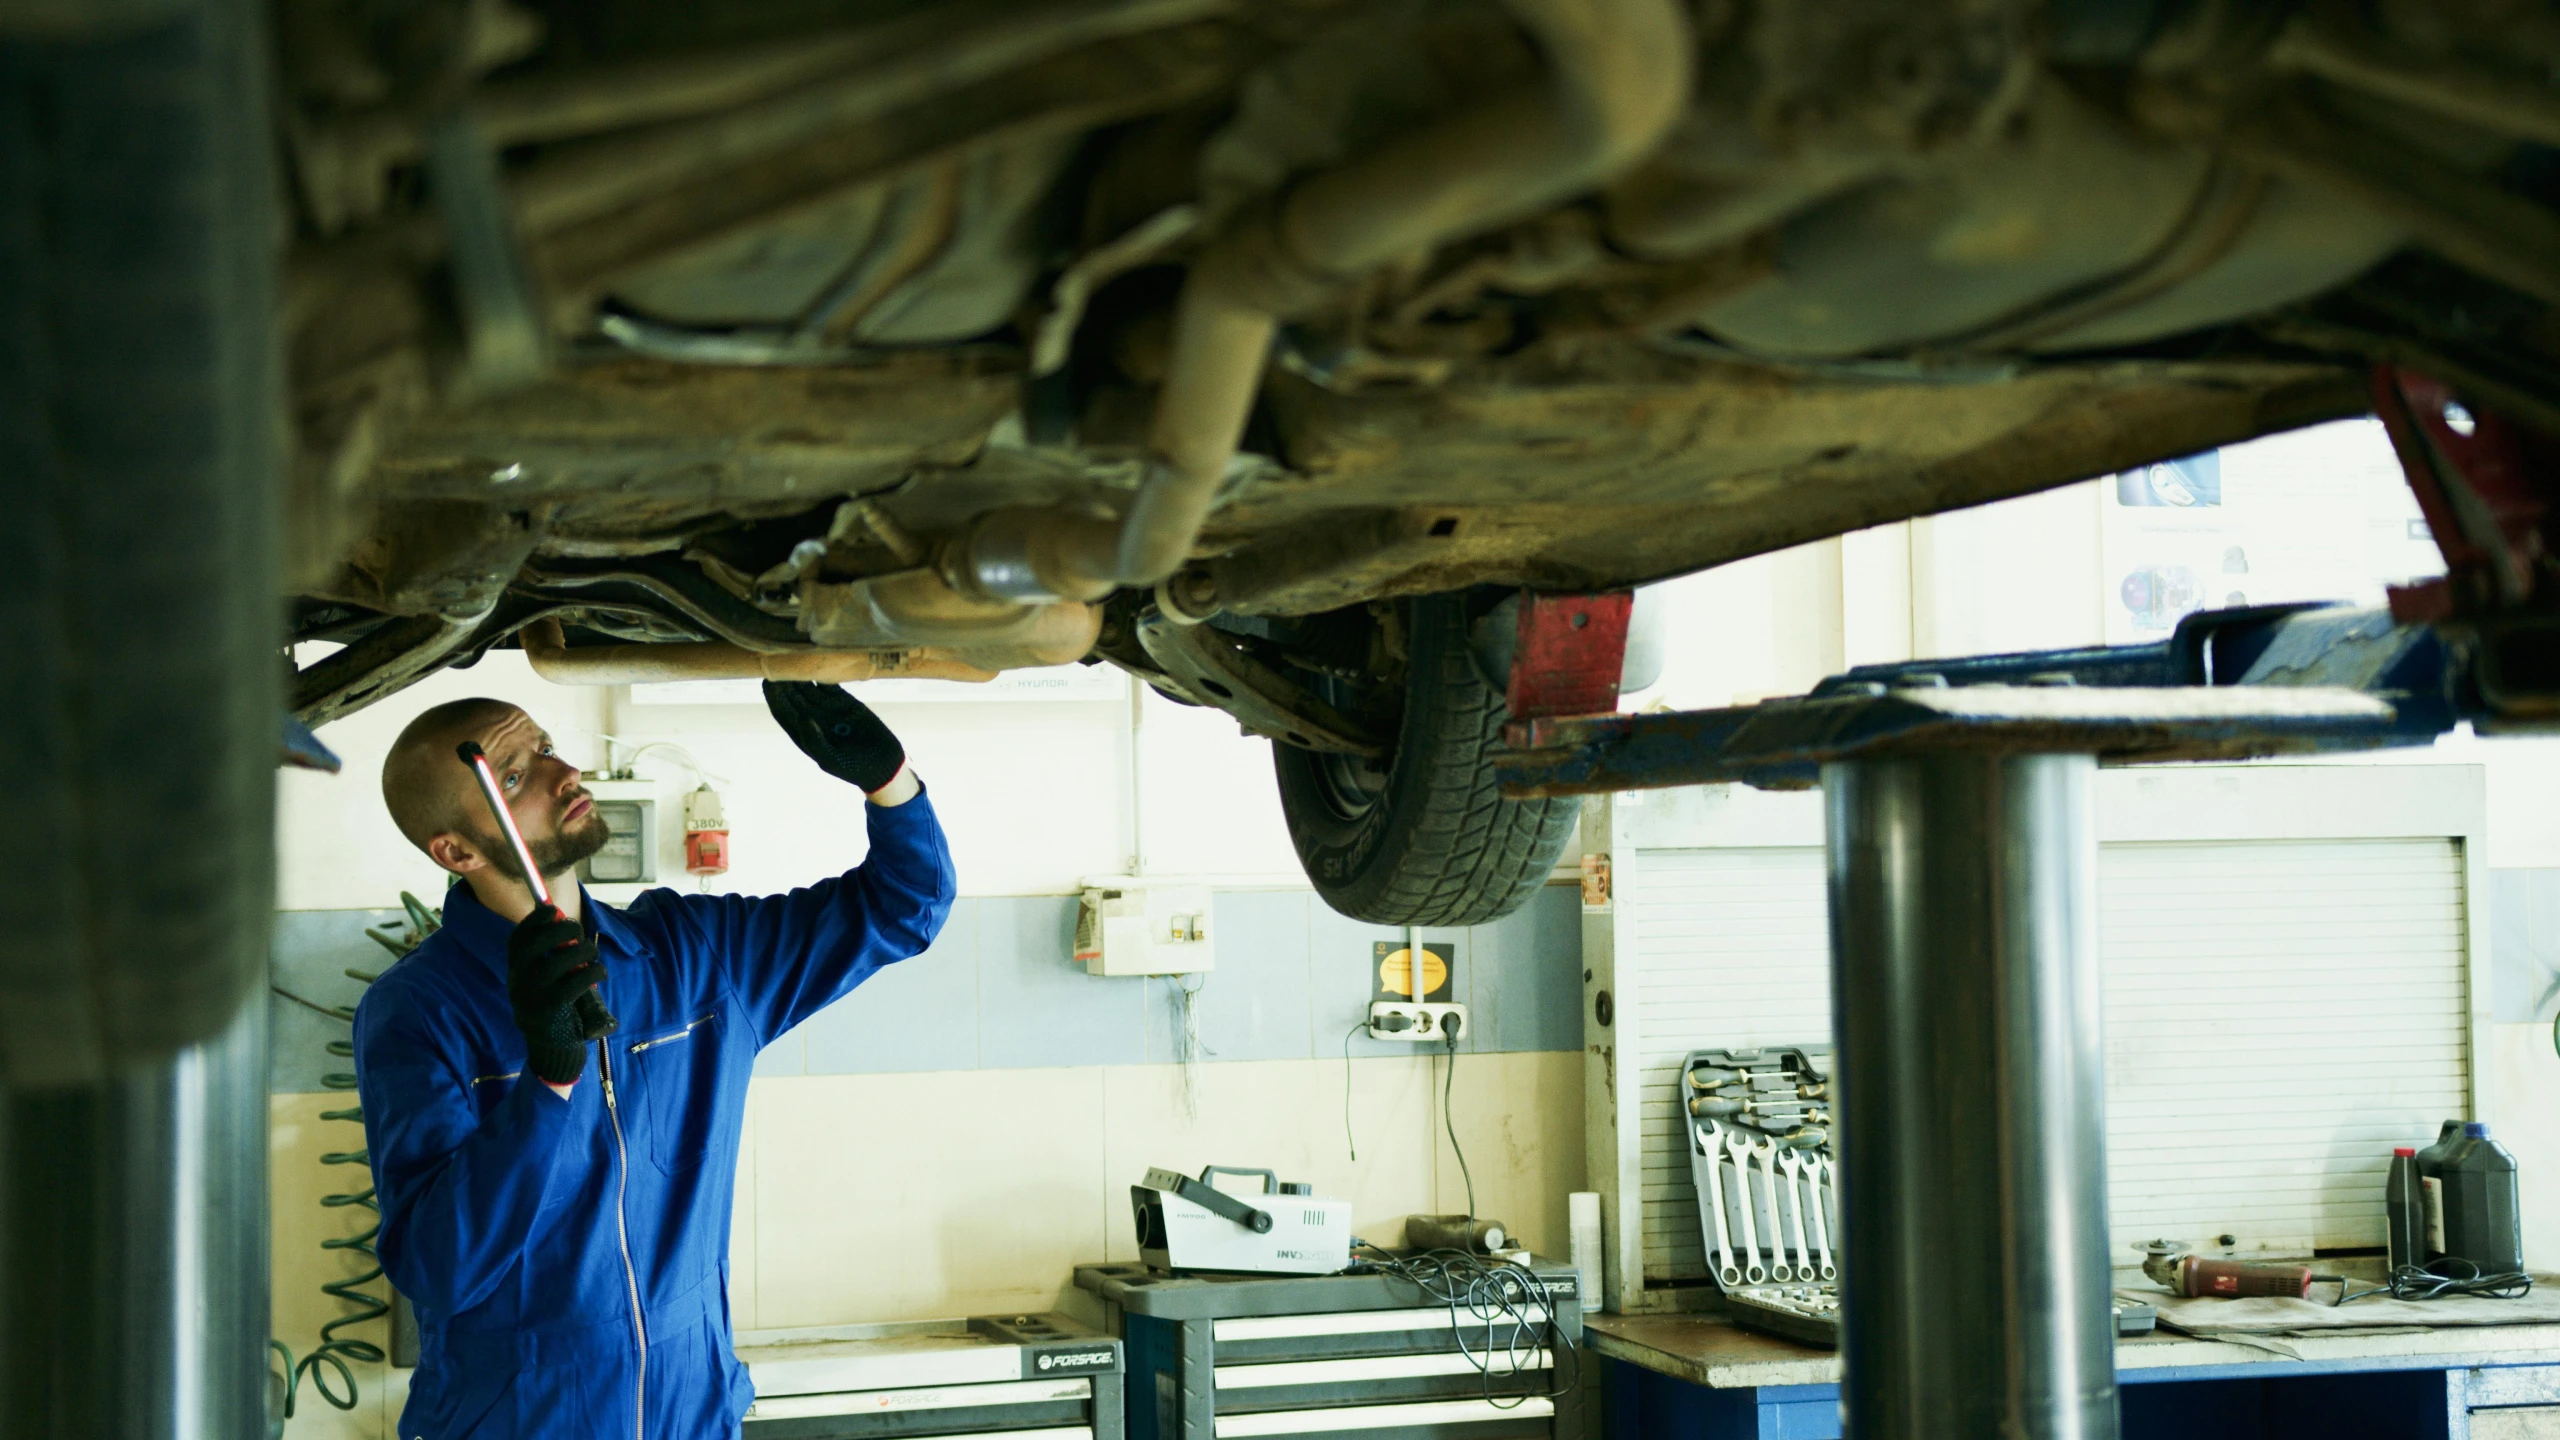 a mechanic working on a vehicle in a garage, by John Murdoch, shutterstock, 3 5 mm photo, 2995599206, blue print, romantic lead